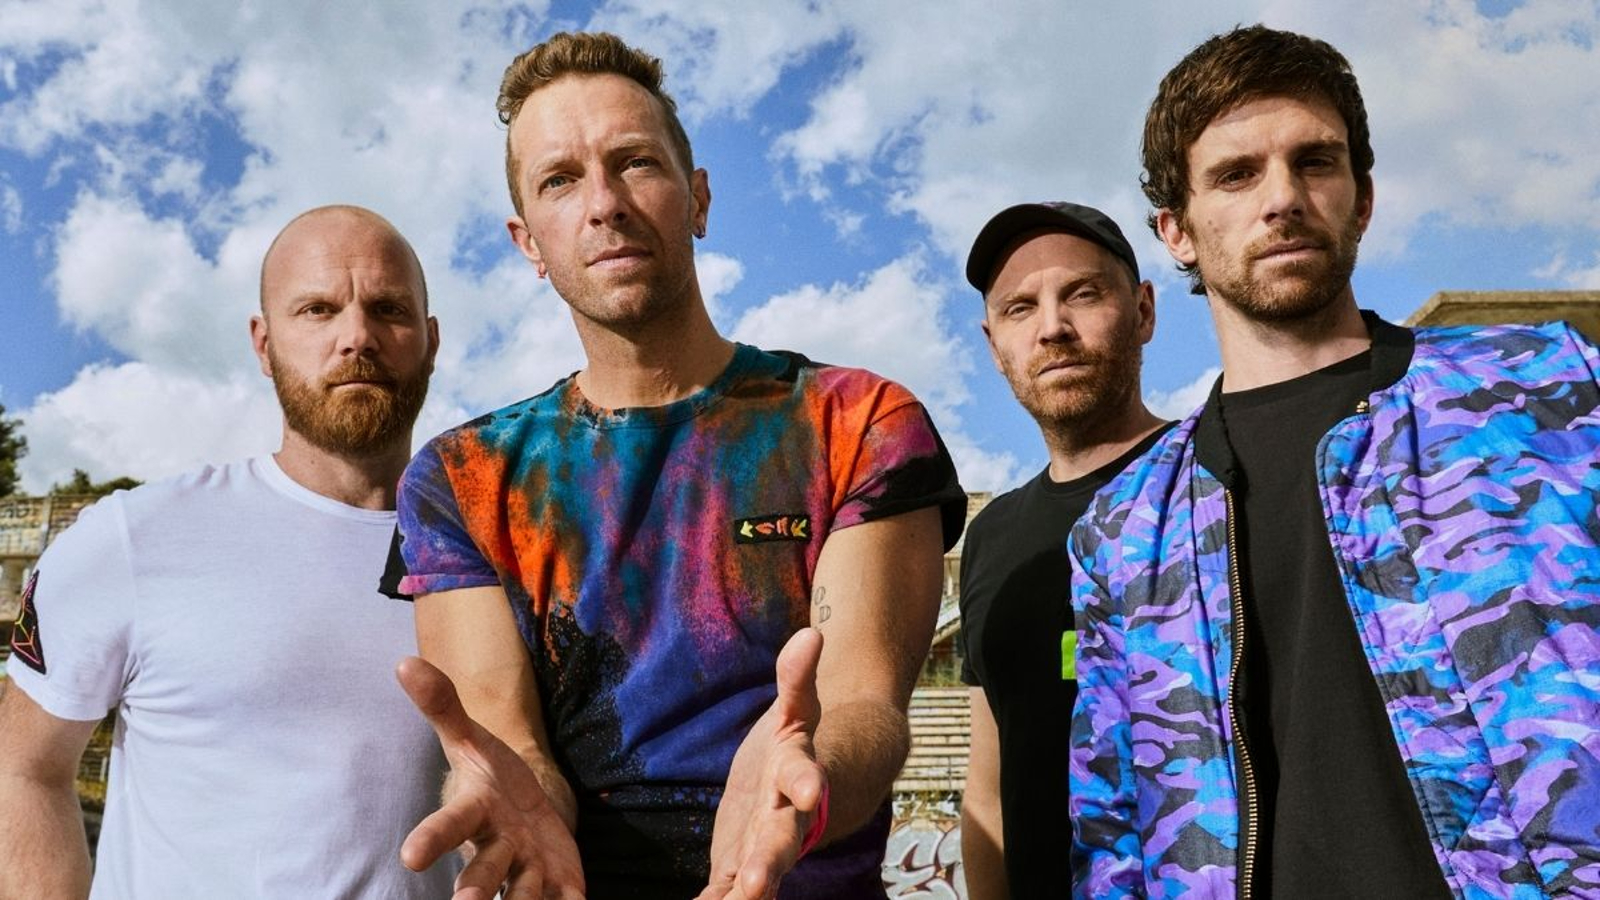 Coldplay - Music Of The Spheres: Live At River Plate, il trailer e la data di uscita del film concerto